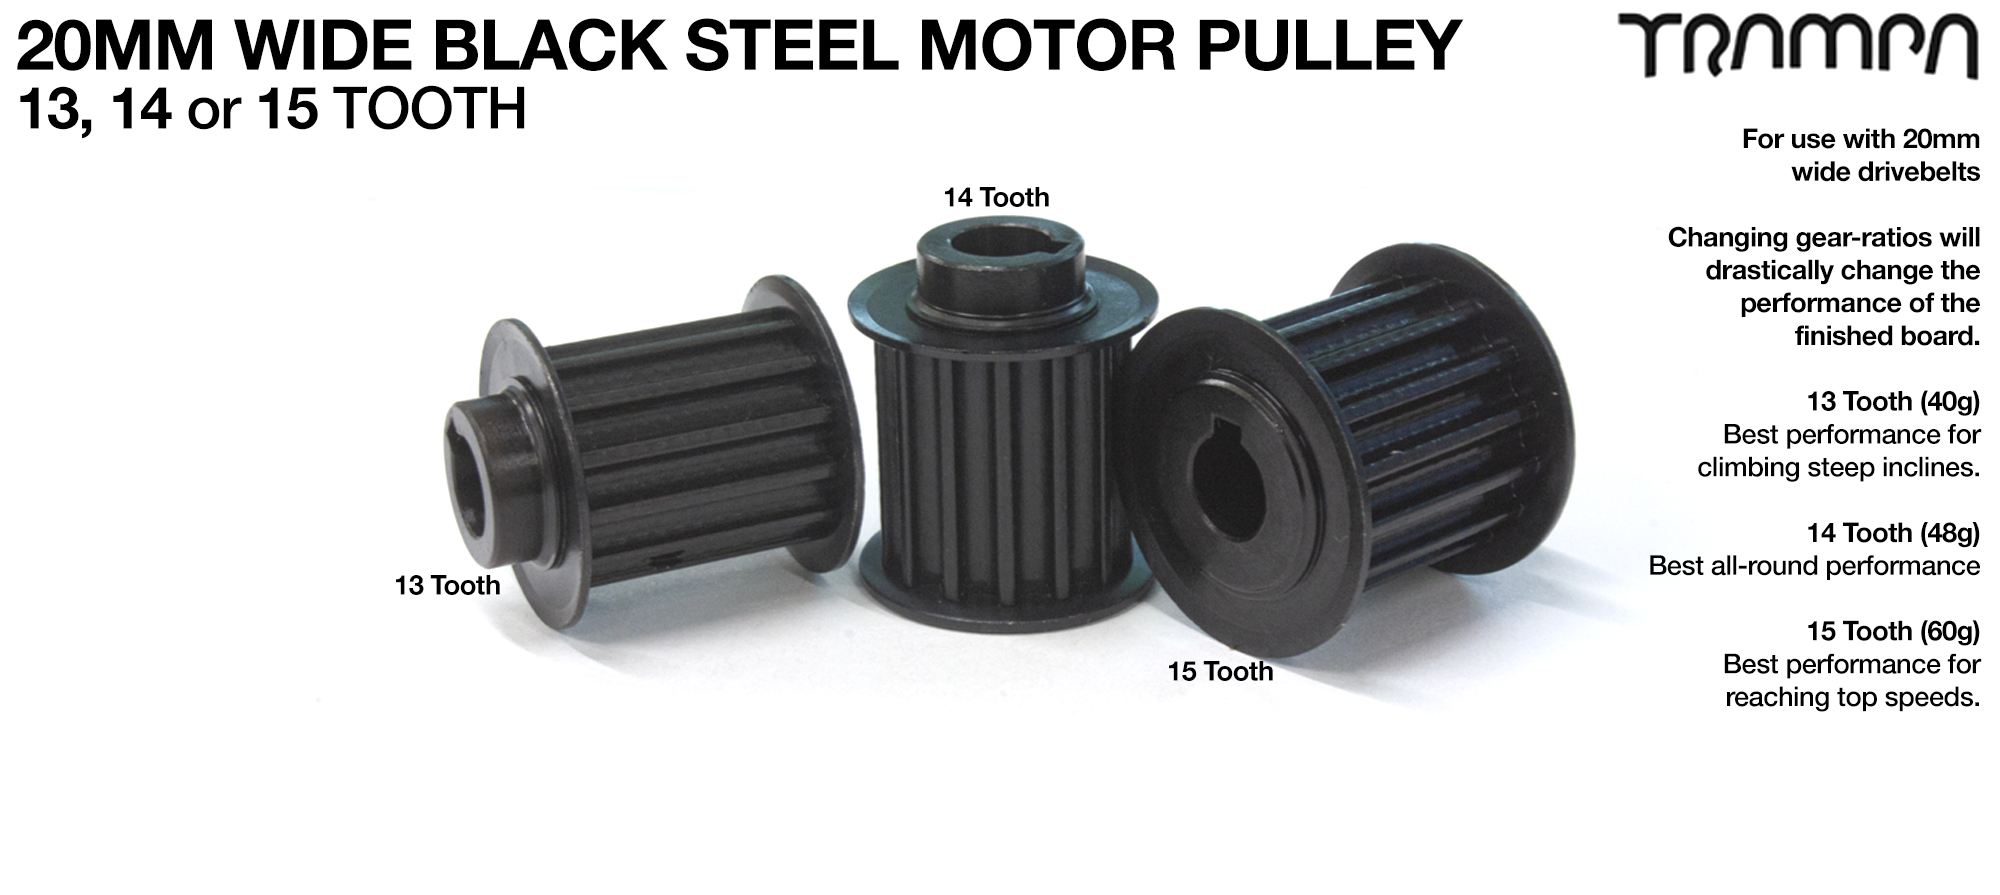 Custom 20mm wide Steel Motor Pulley 13, 14 or 15 tooth